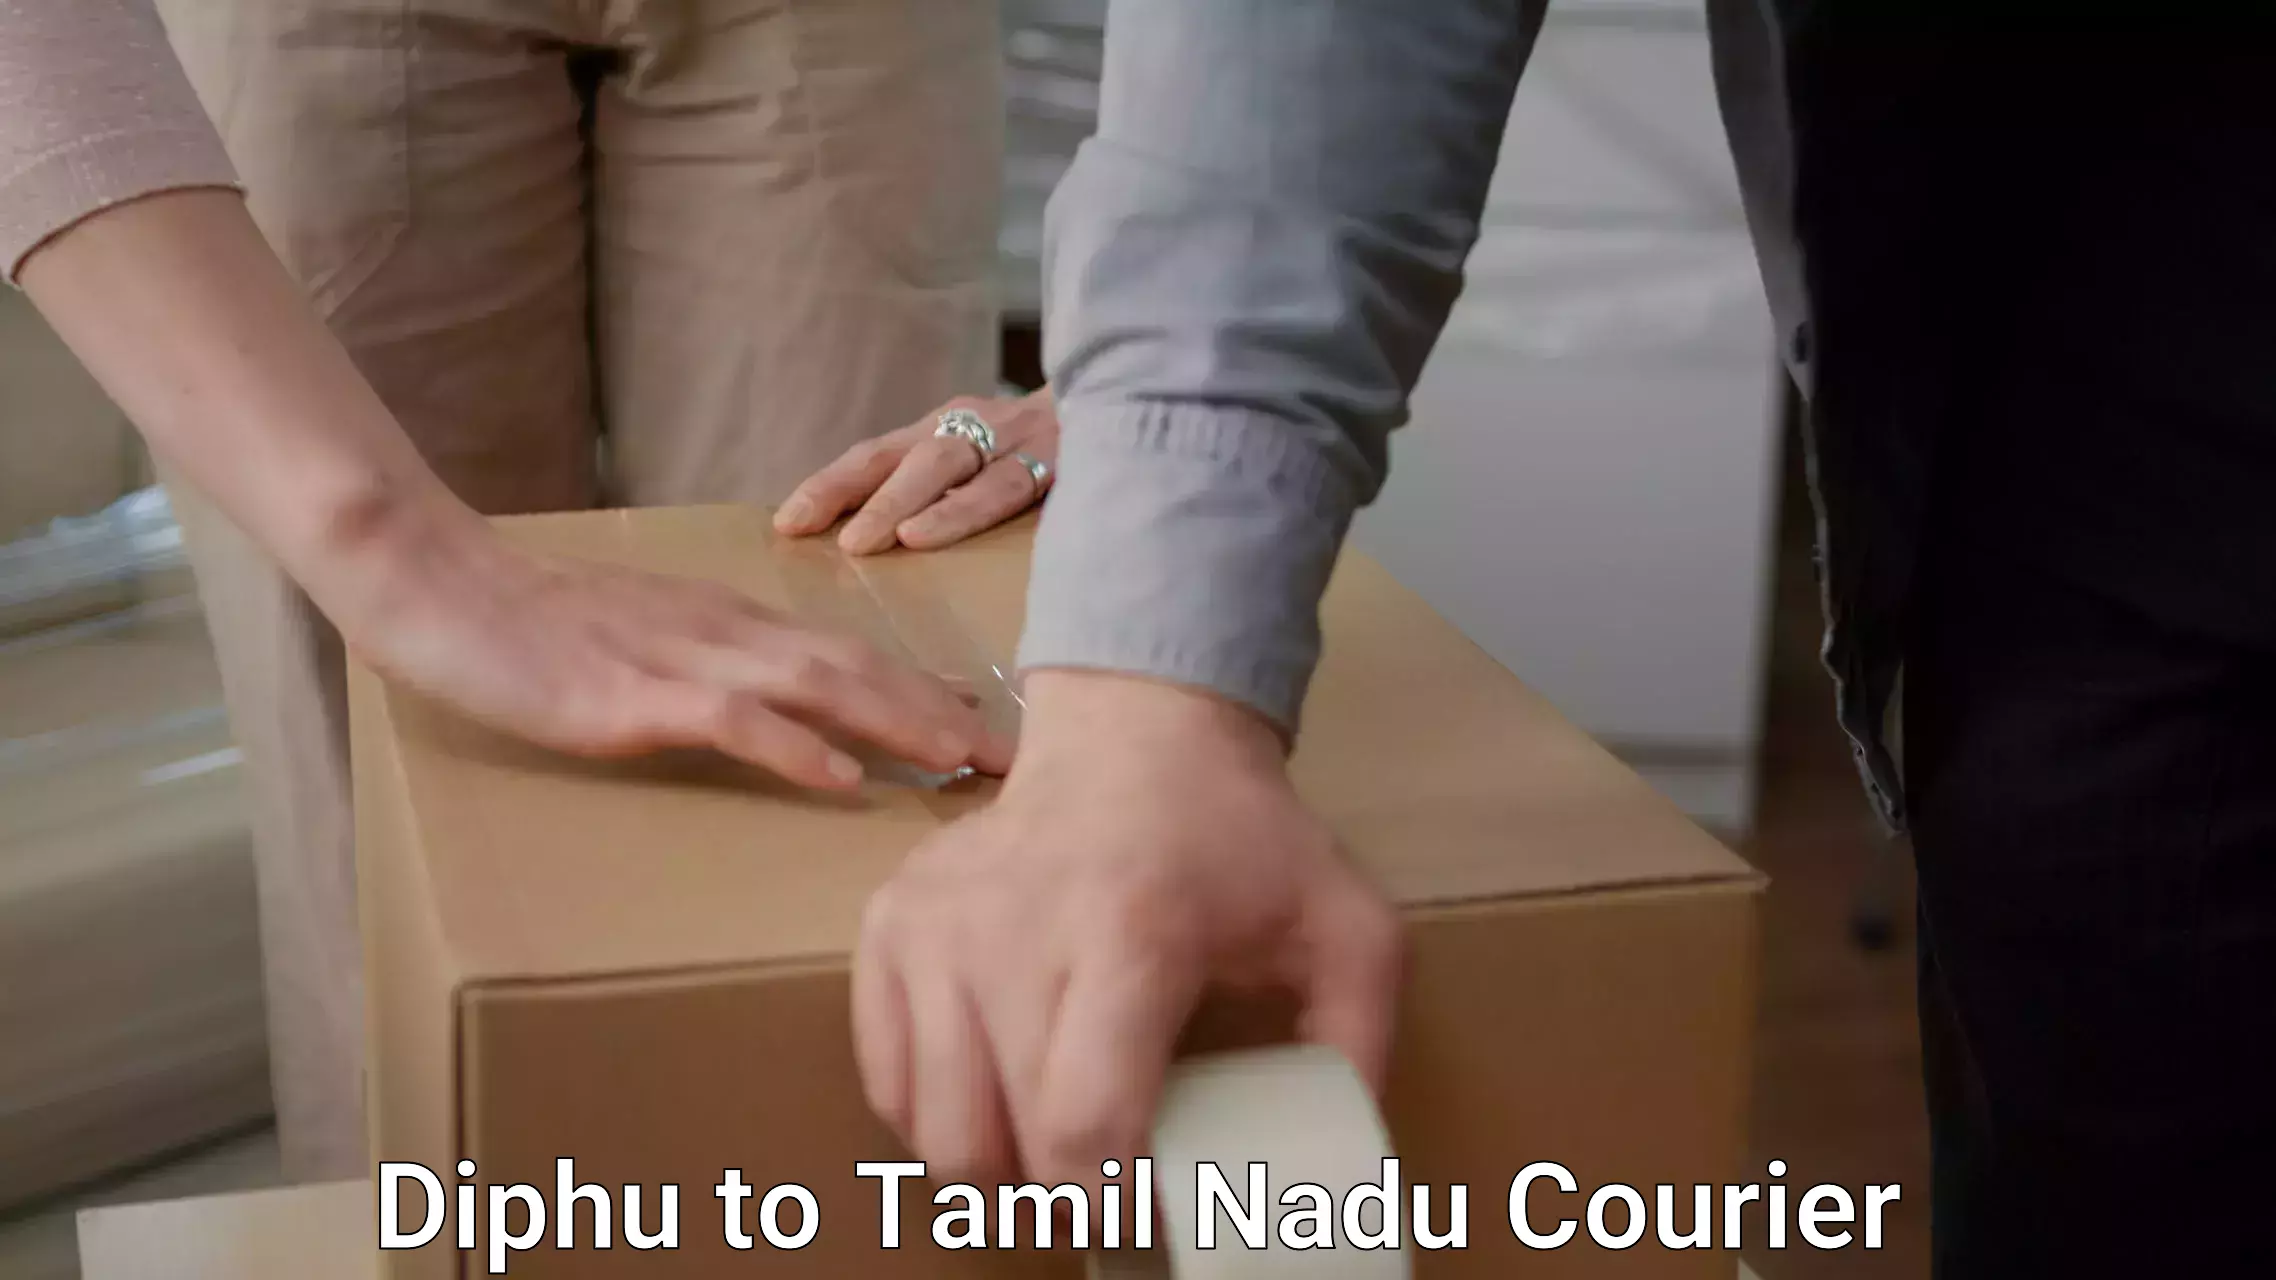 Reliable movers Diphu to Tirunelveli